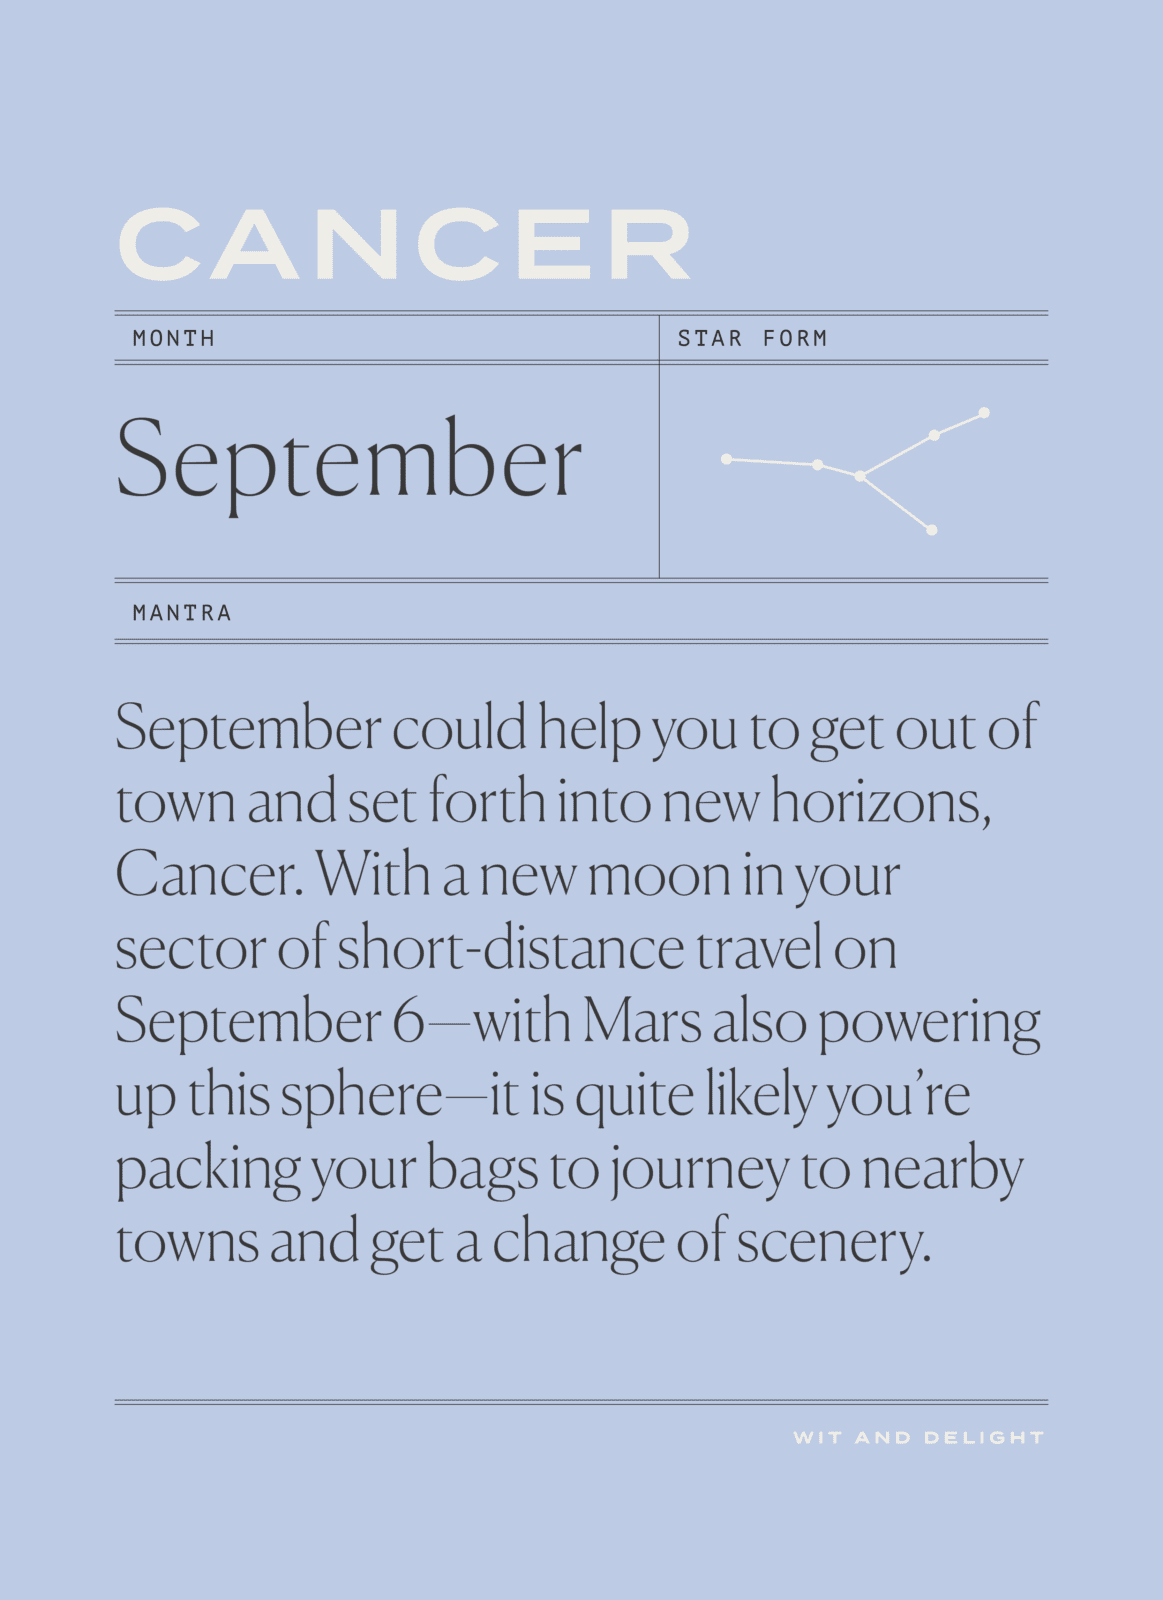 September 2021 Horoscopes: Focus on the Details | Wit & Delight